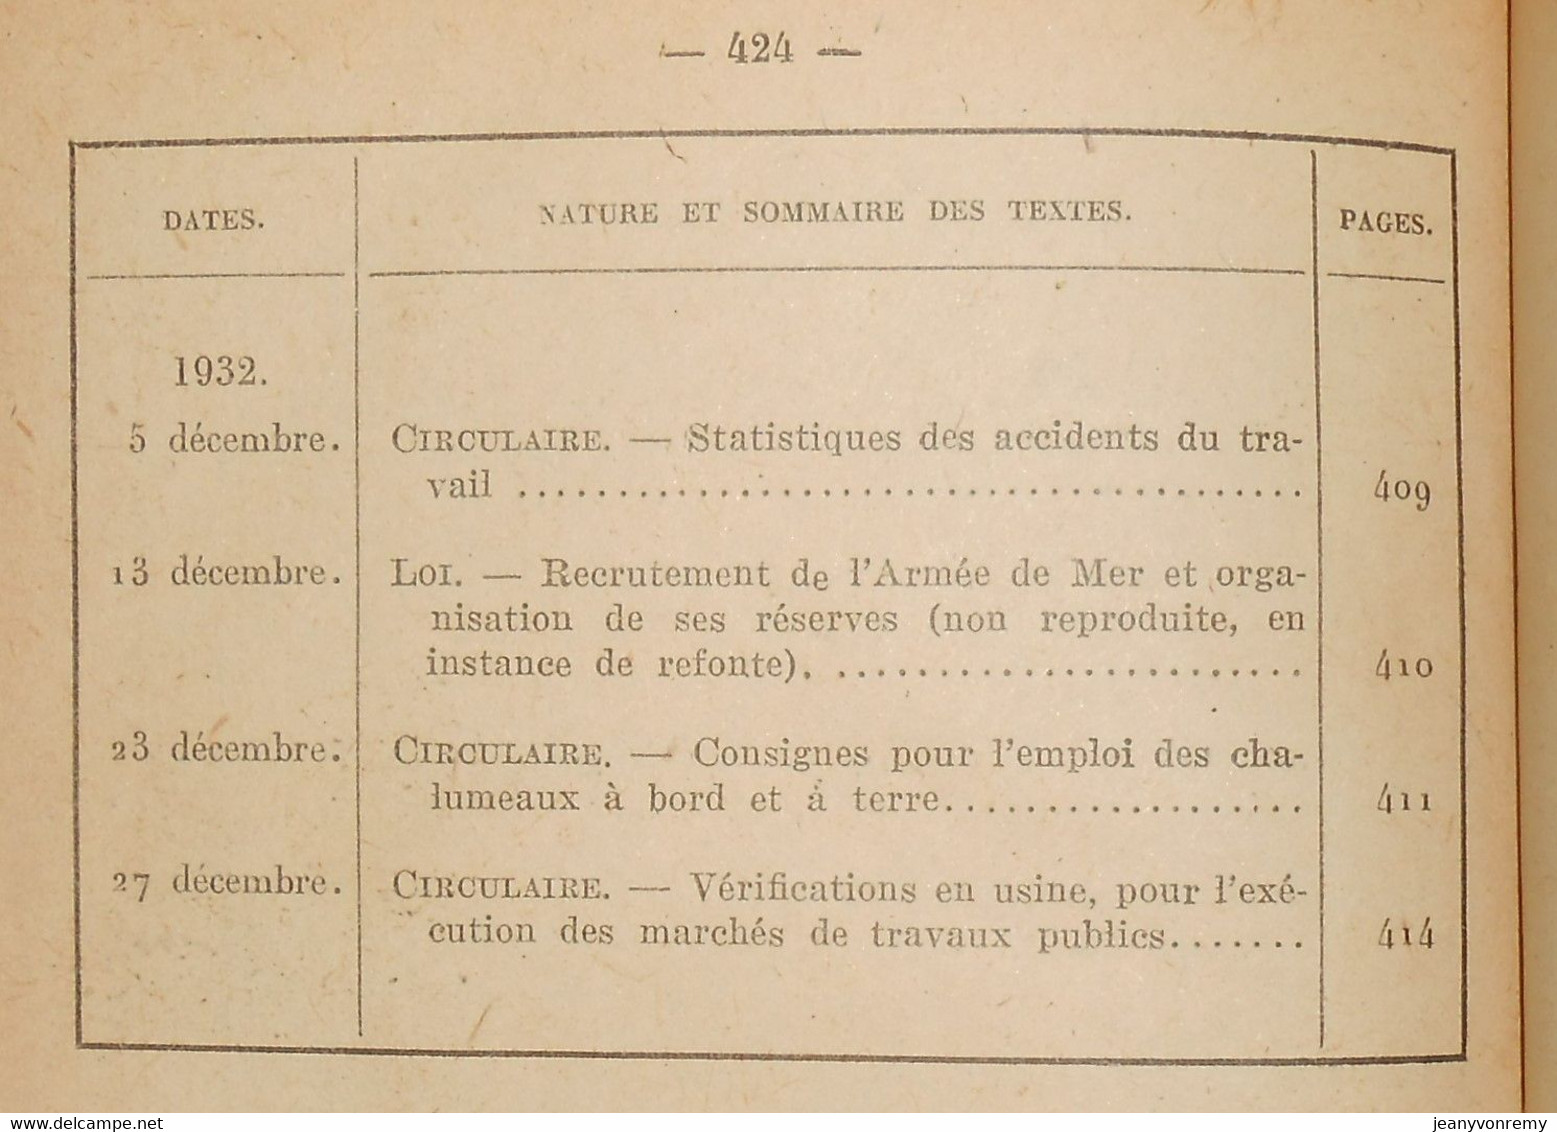 Bulletin Officiel de la Marine. 1er et 2ème semestres 1932. République française. 1948.